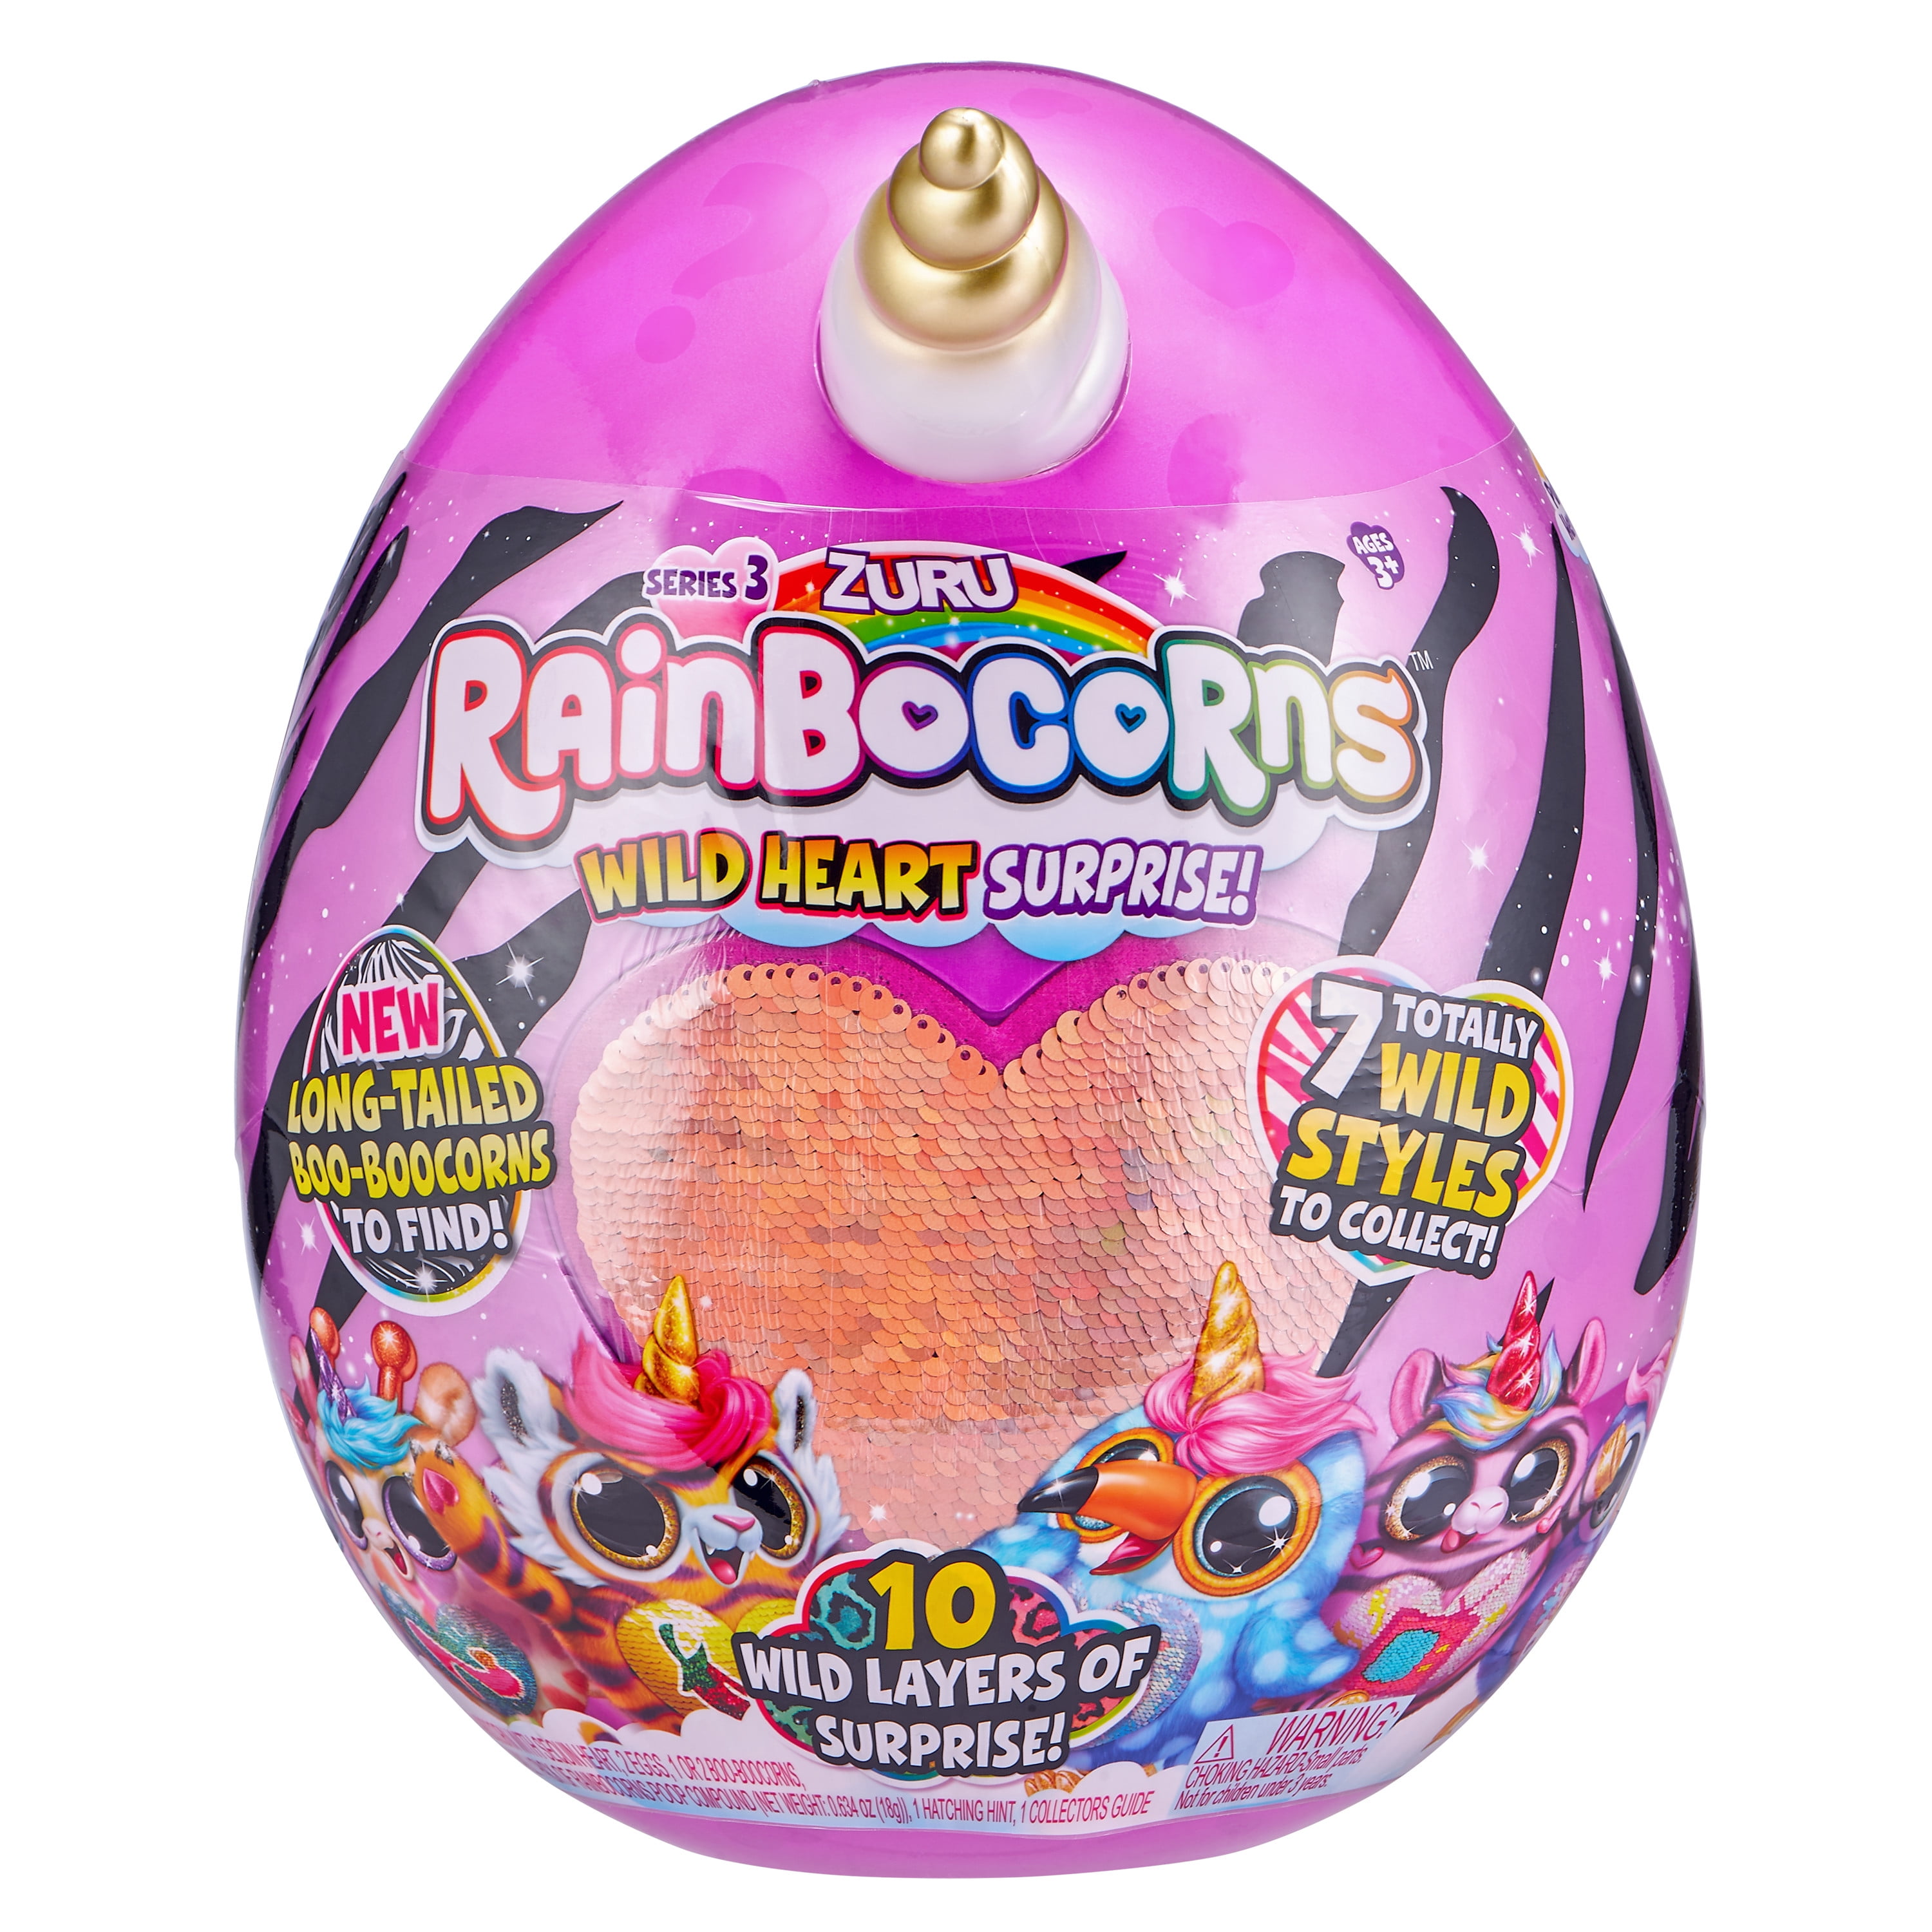 Rainbocorns яйцо сюрприз. Игрушка Zuru Rainbocorns s3. Zuru игрушка – игровой набор: «Rainbocorns – сюрприз в яйце» s3, в ассорт. Мягкая игрушка Zuru "плюш-сюрприз Rainbocorns" в яйце (т18601). Игровой набор Zuru Rainbocorns сюрприз в яйце с аксессуарами.